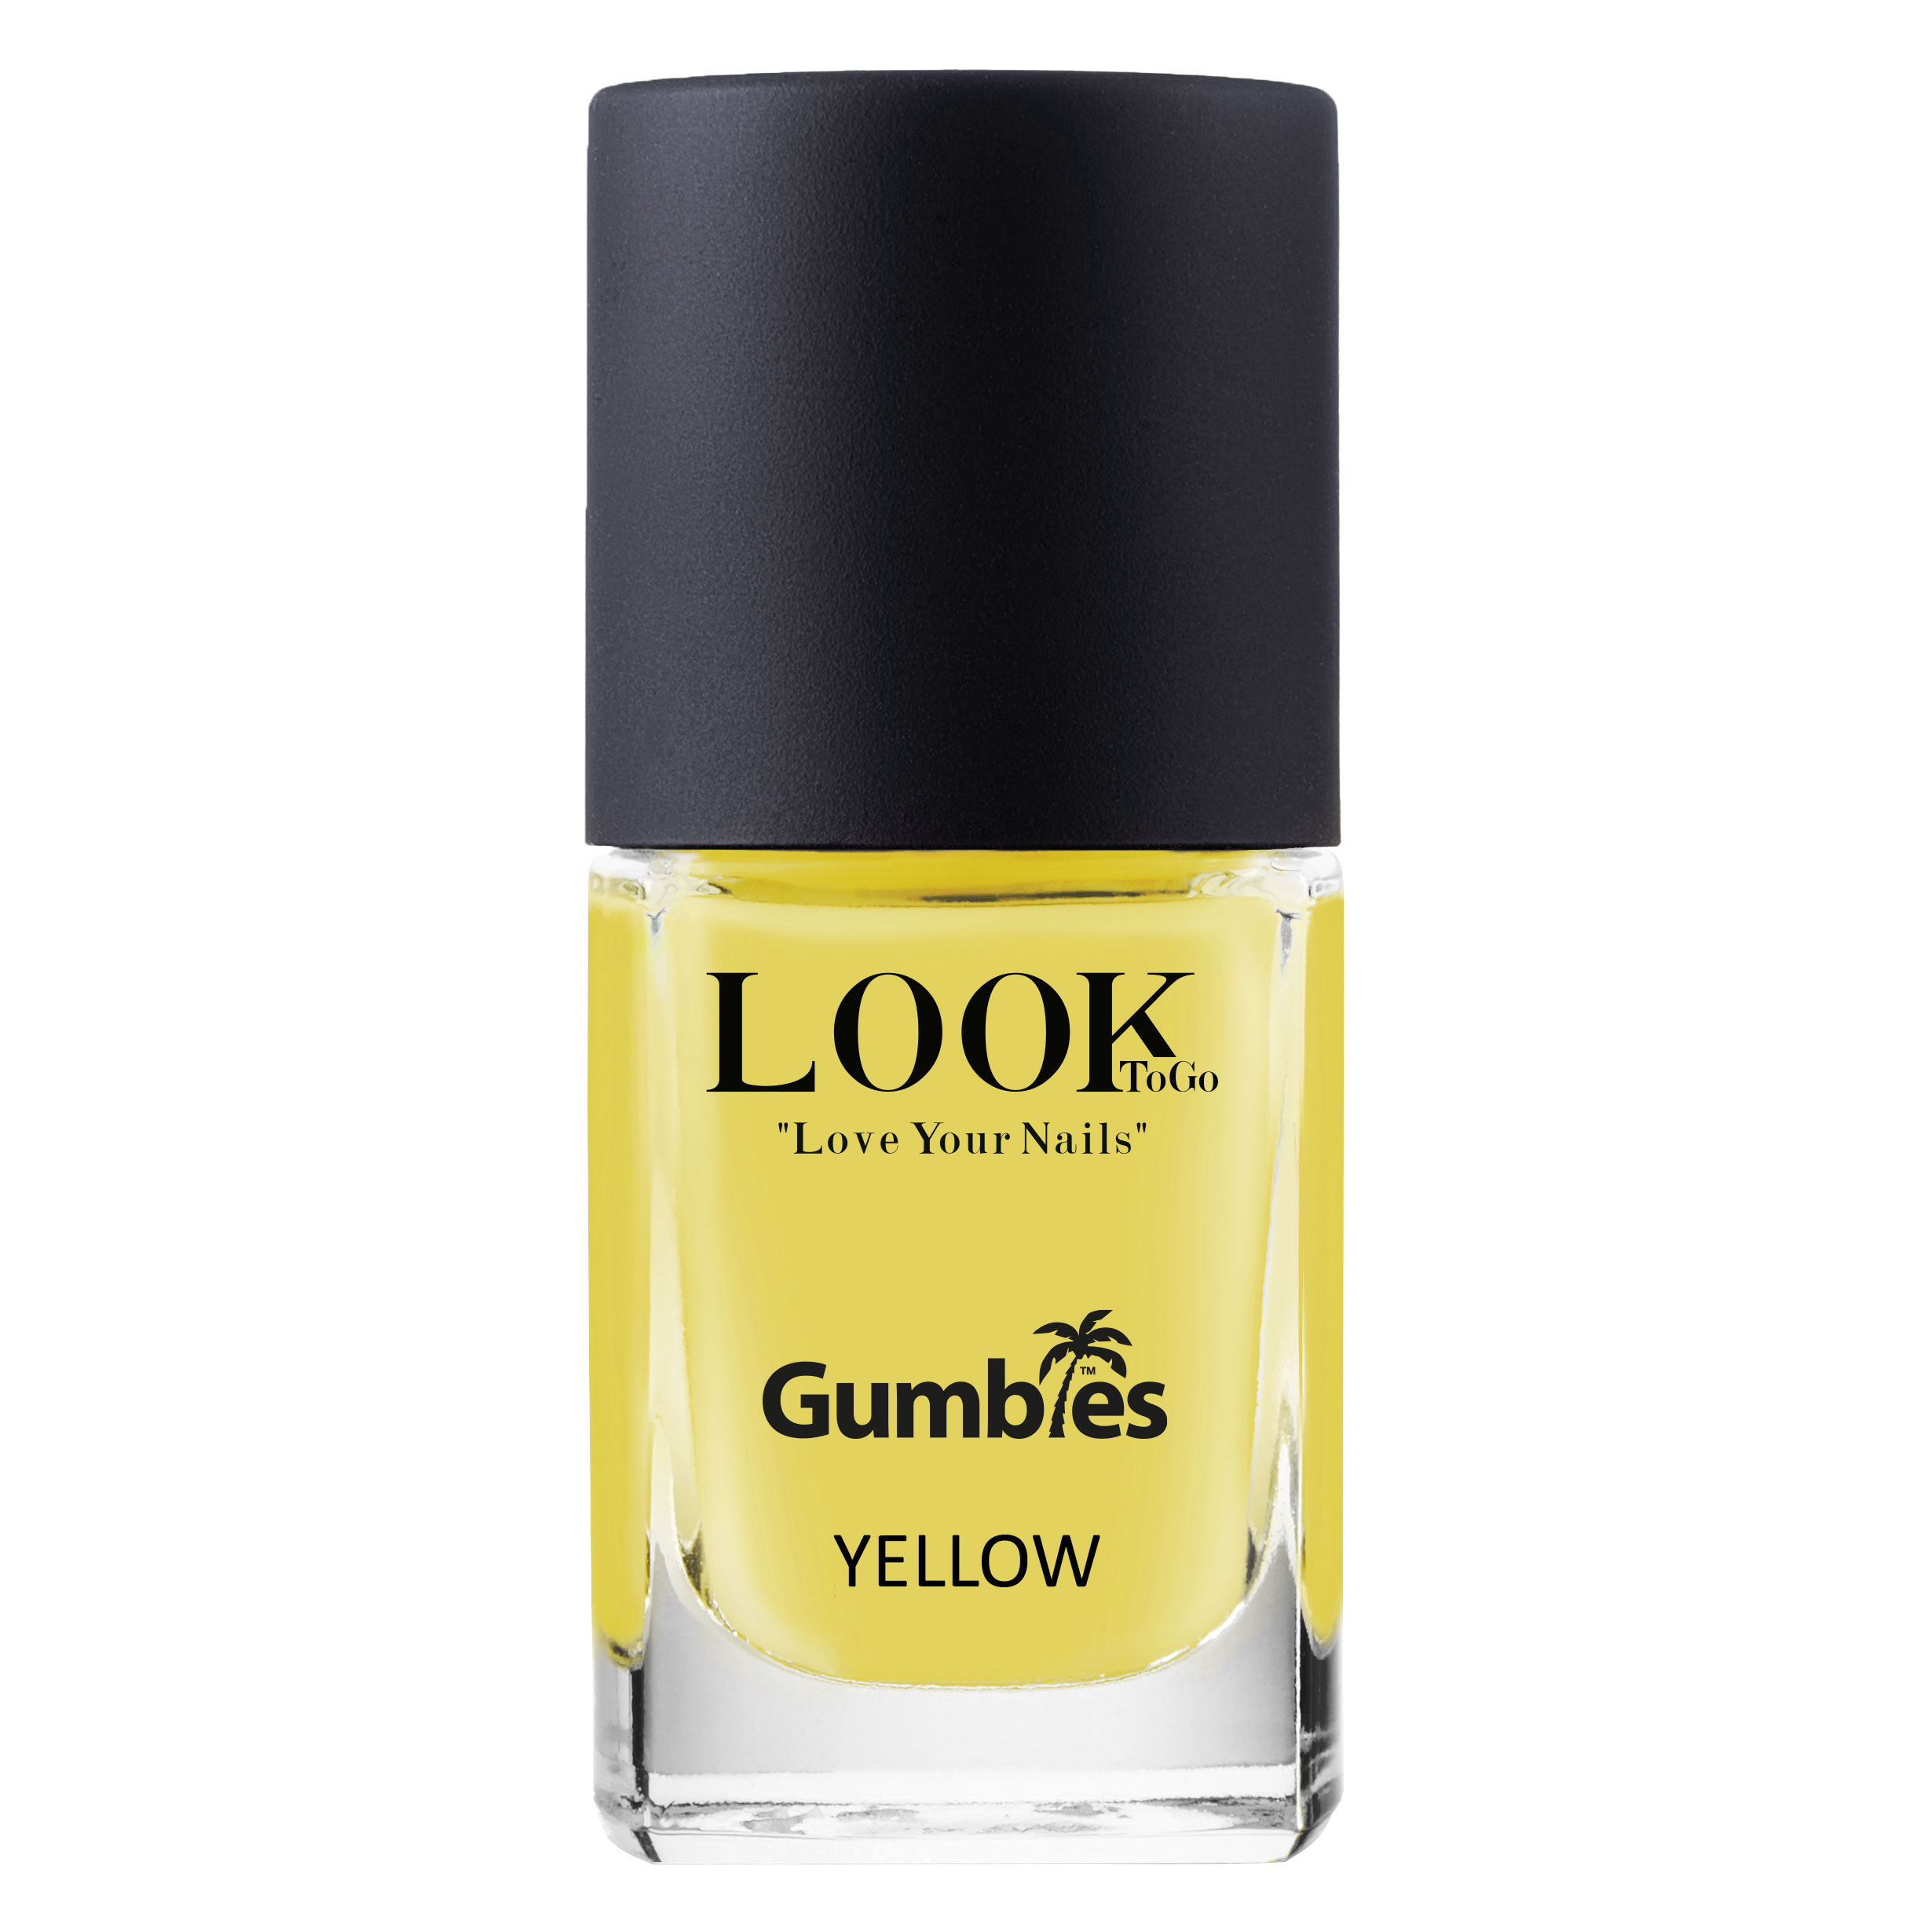 Nagellack "GUMBIES Yellow" von Look-To-Go